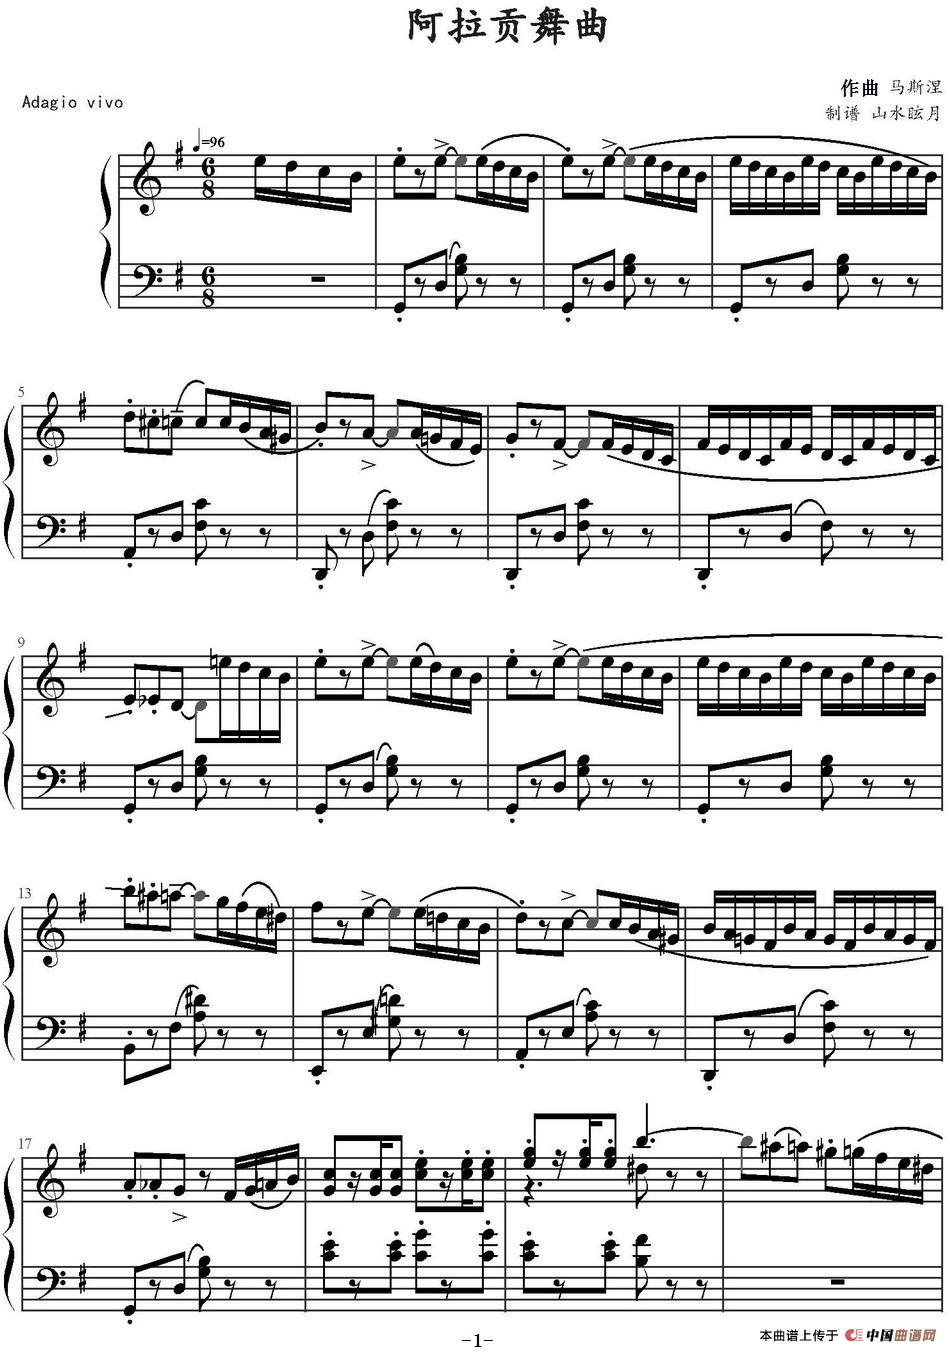 《阿拉贡舞曲》钢琴曲谱图分享